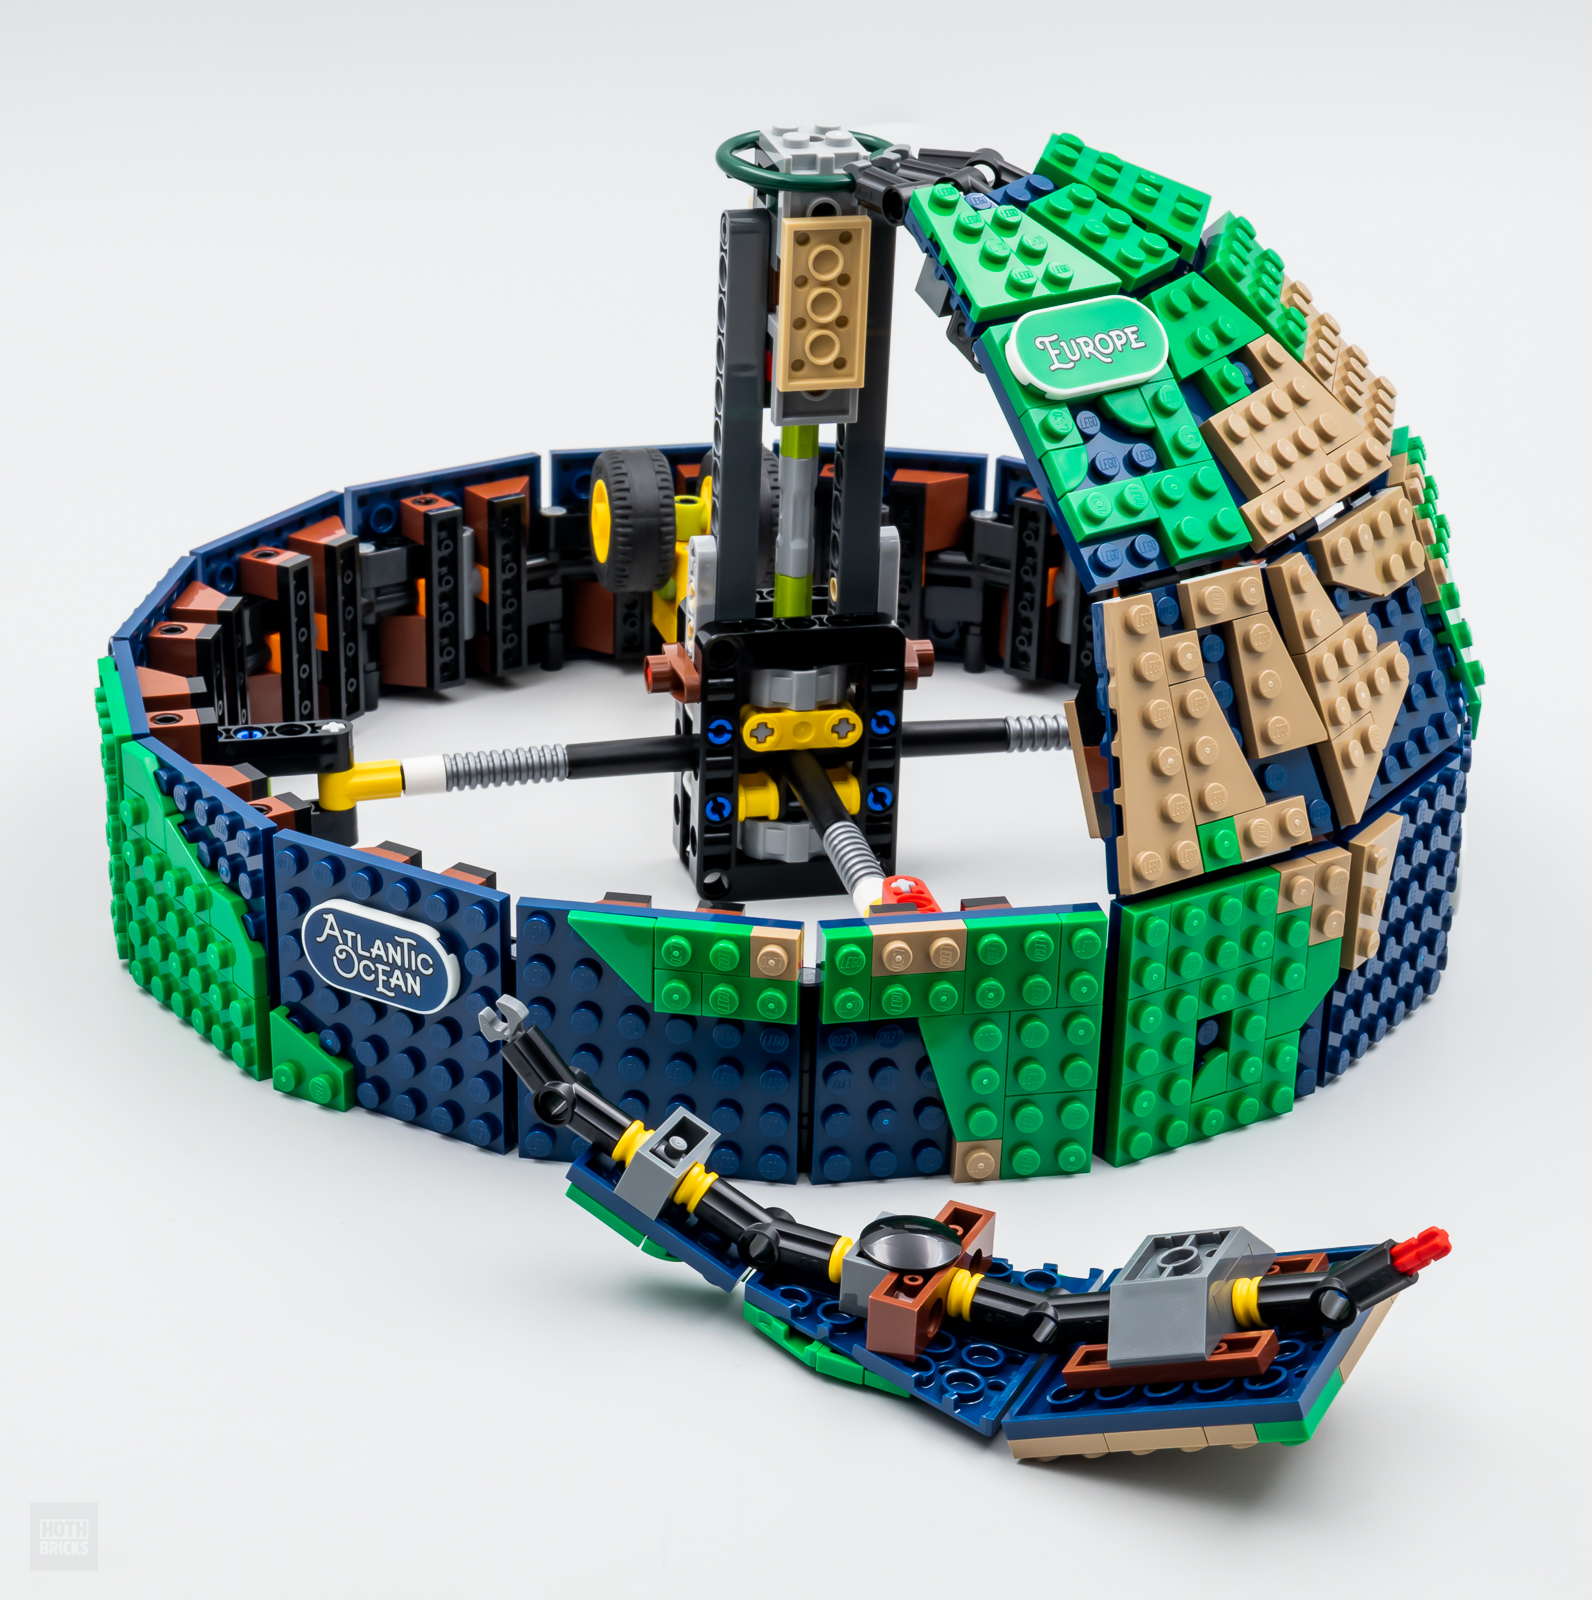 LEGO Ideas The Globe presentato ufficialmente: data d'uscita e prezzo